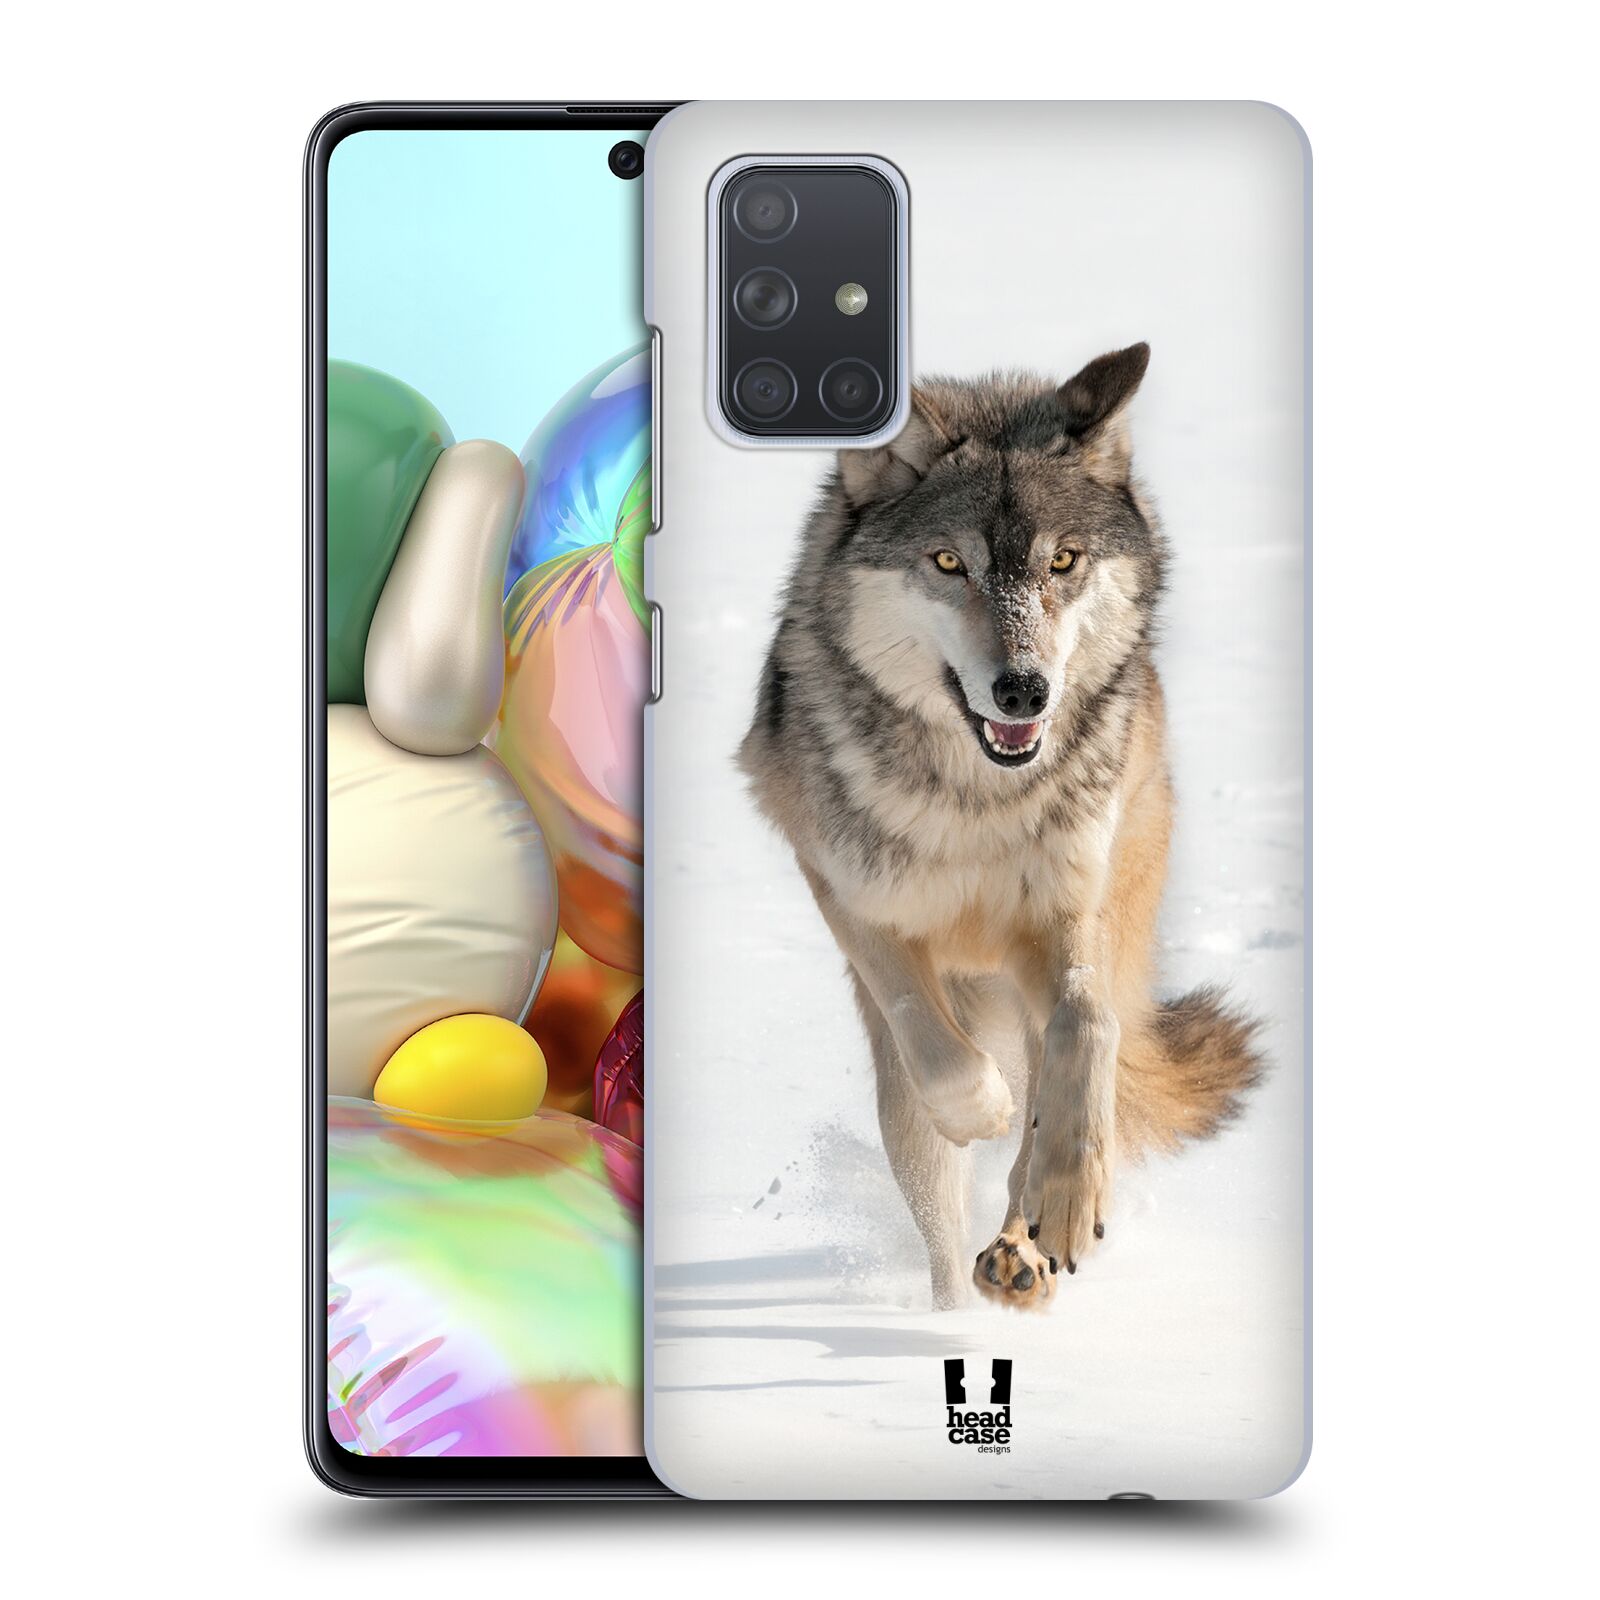 Zadní obal pro mobil Samsung Galaxy A71 - HEAD CASE - Svět zvířat divoký vlk